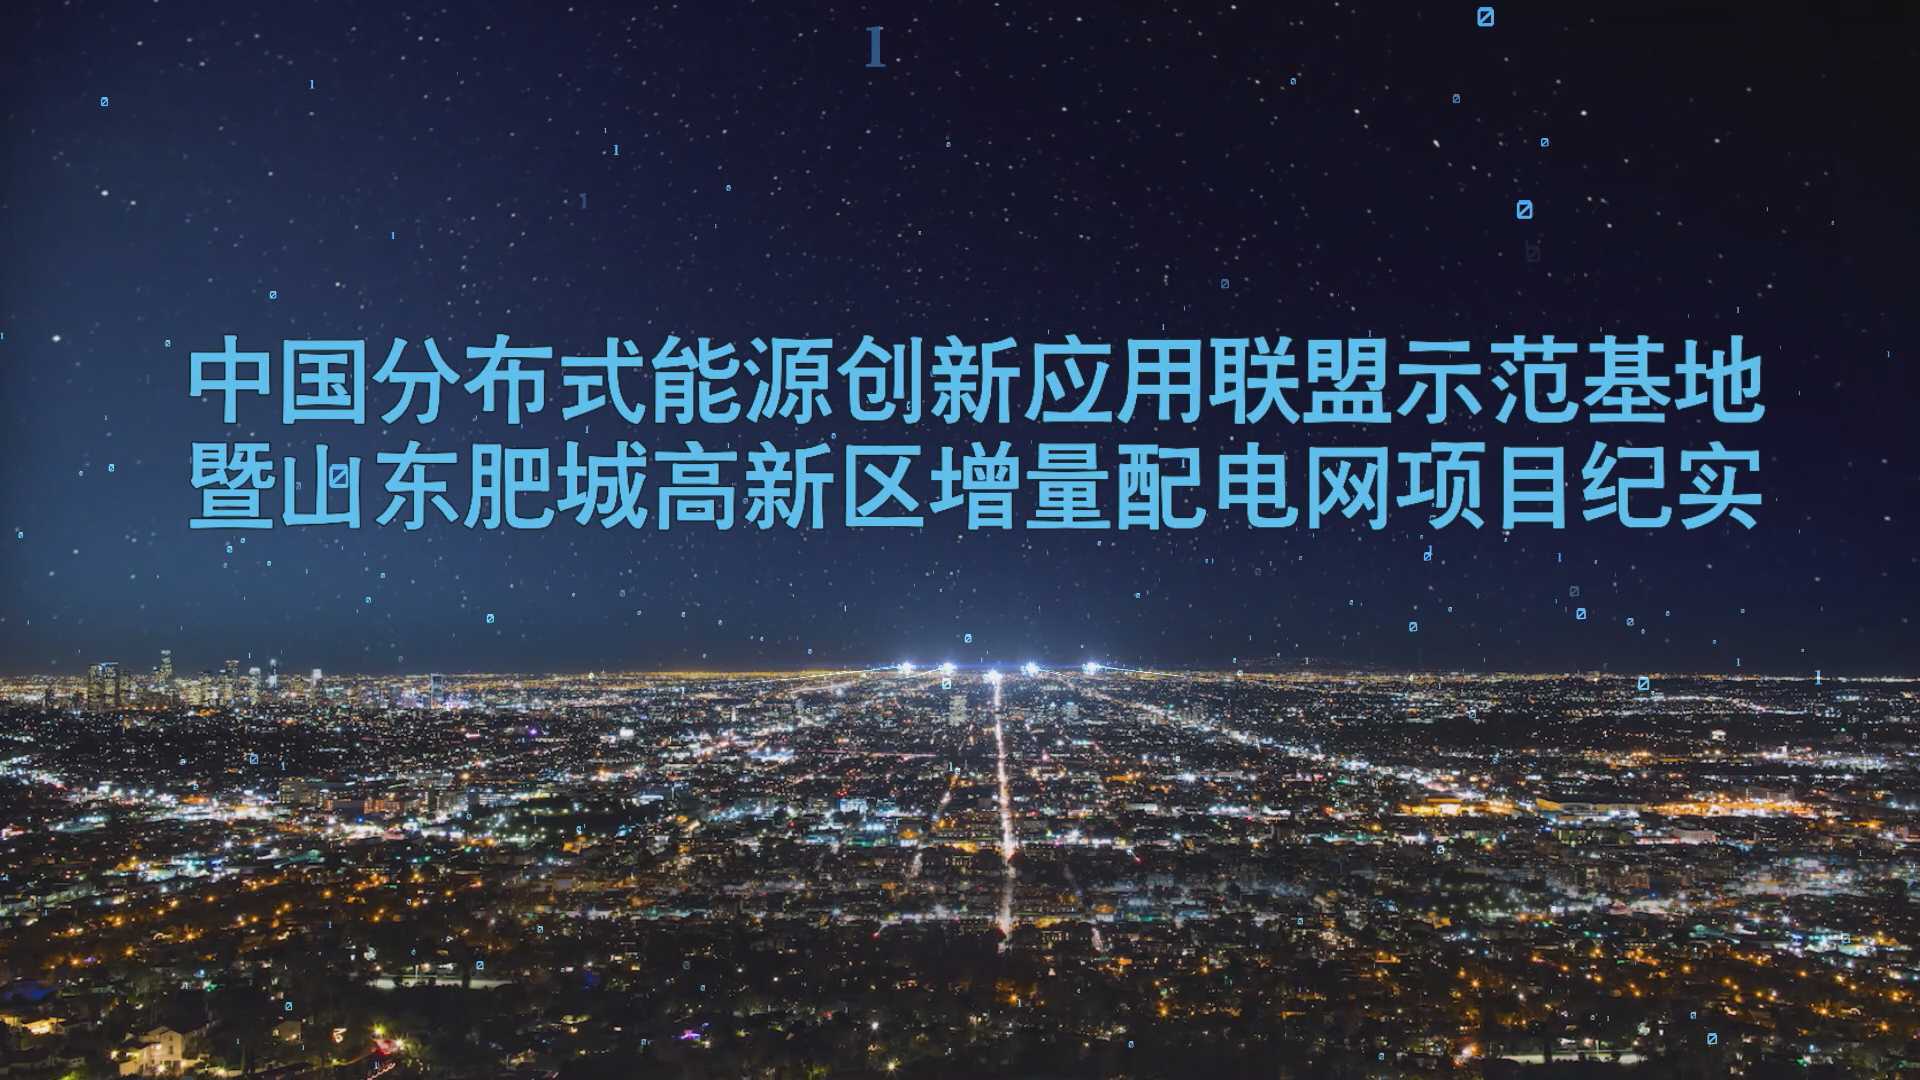 中国分布式能源创新应用联盟示范基地暨山东肥城高新区增量配电网项目纪实